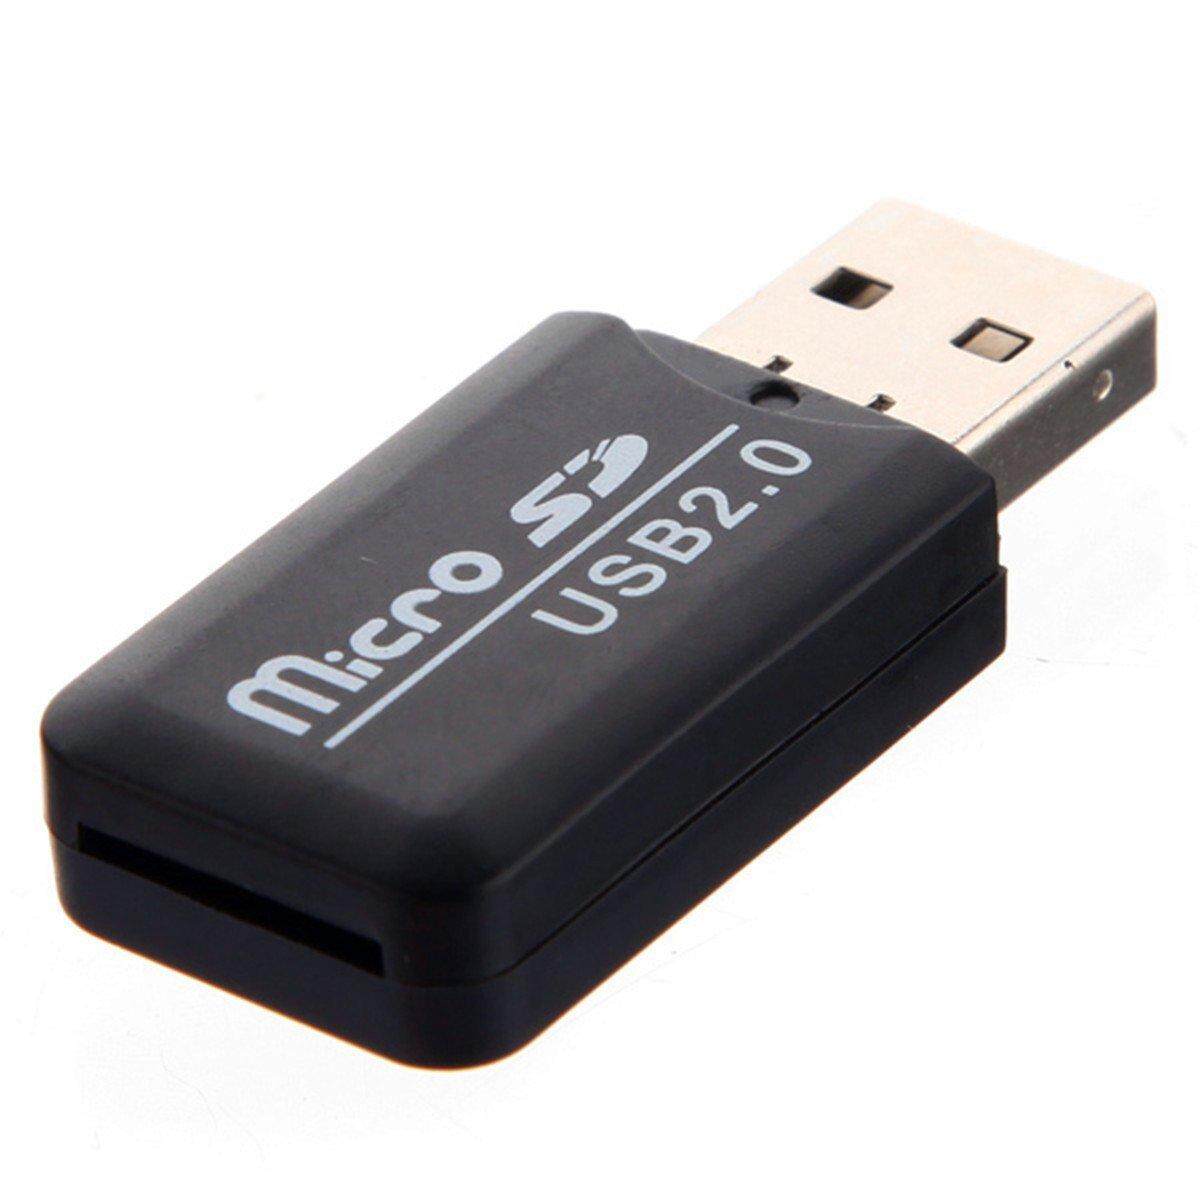 Флешка сд цена. Флешка MICROSD USB 2.0. Картридер USB 2.0 для MICROSD. Card Reader USB SD Card MICROSD. Картридер USB 2.0 Hup.